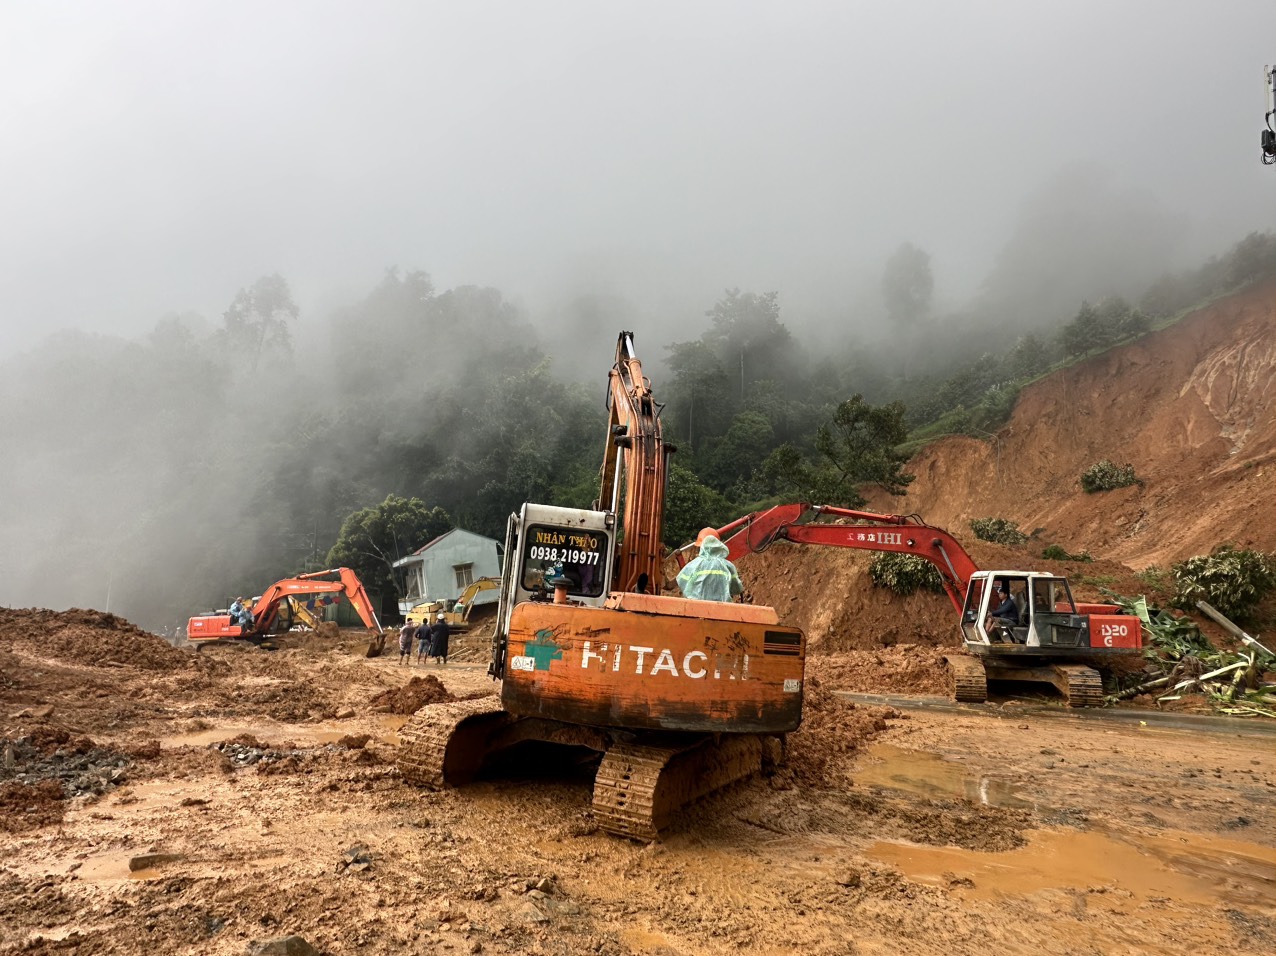 Theo ghi nhận của phóng viên Lao Động tại hiện trường, các lực lượng cứu hộ vẫn đang khoanh vùng, đào xới đất để tìm thi thể nạn nhân còn lại. Tuy nhiên, điều kiện thời tiết khắc nghiệt chính là trở ngại lớn, ảnh hưởng đến tốc độ tìm kiếm người gặp nạn.